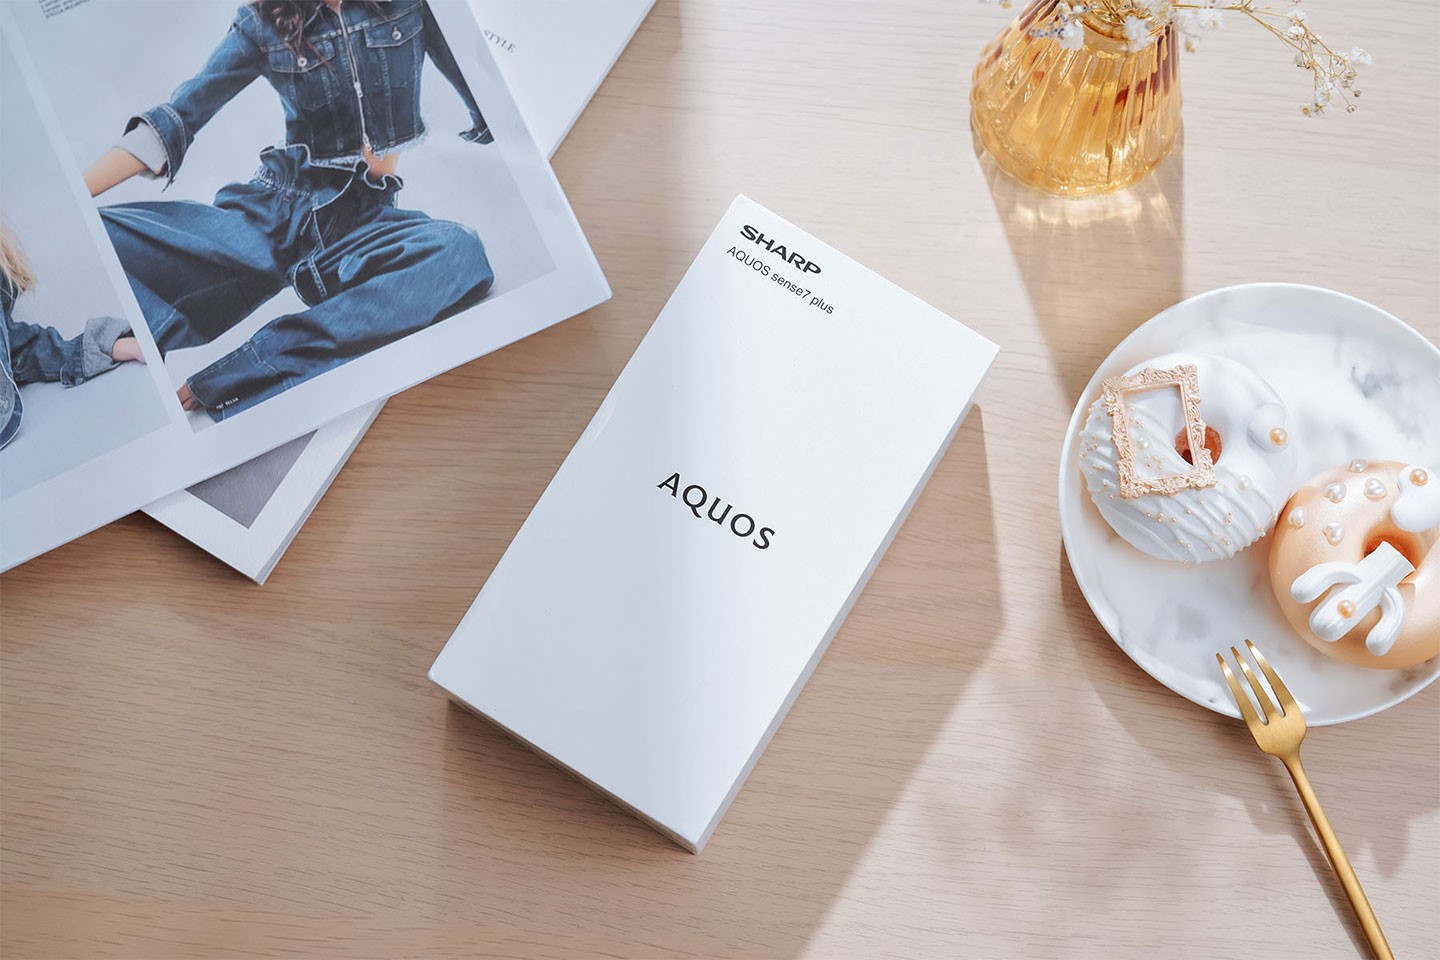 AQUOS sense7 plus 的外盒為純白色，盒身僅標示出品牌及型號樣，沒有加入過多的裝飾點綴。